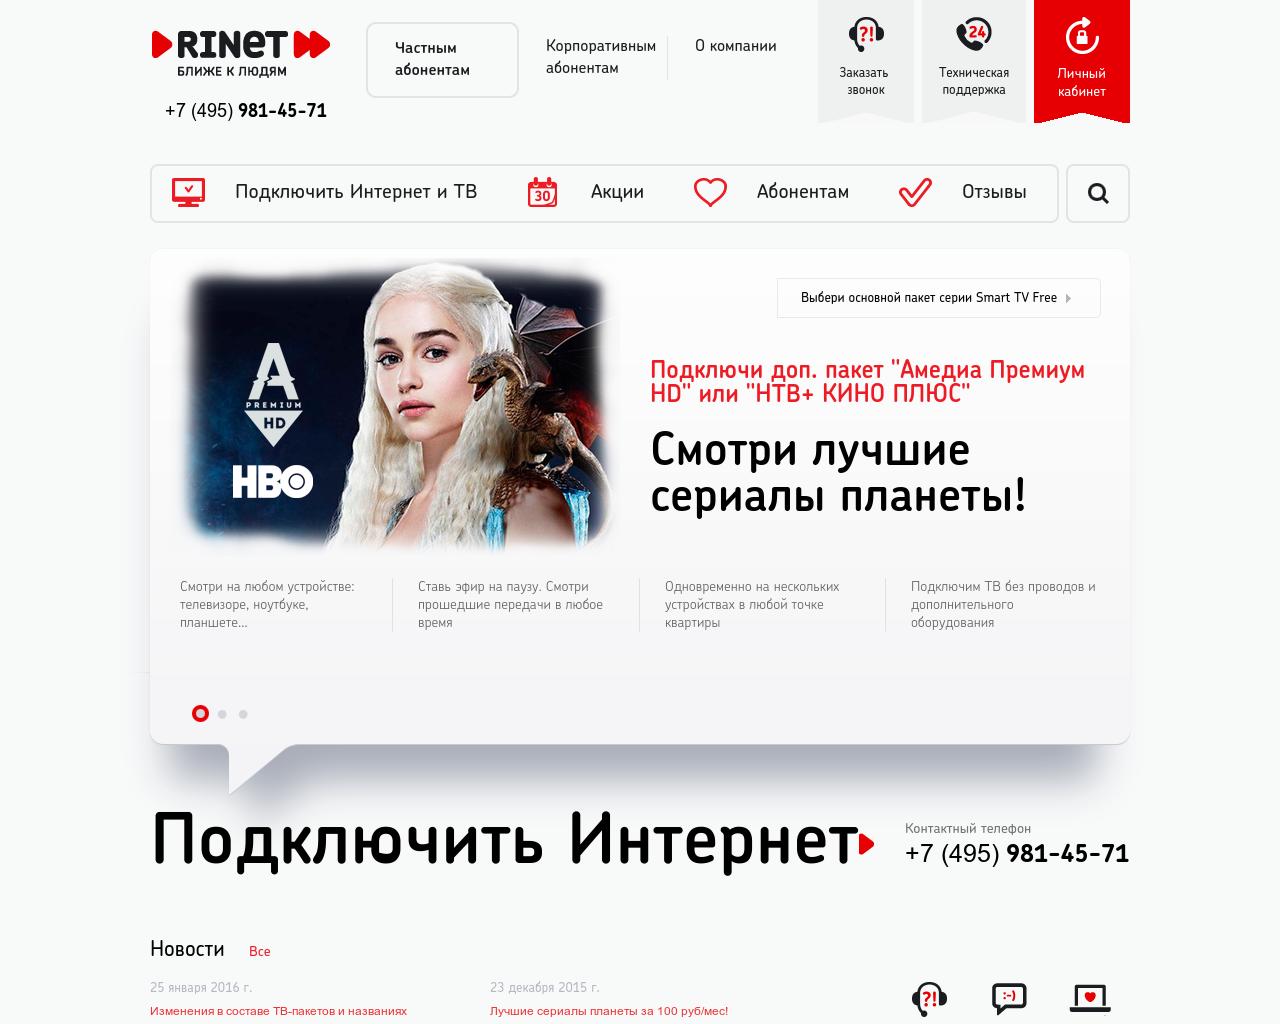 Изображение сайта rinet.ru в разрешении 1280x1024